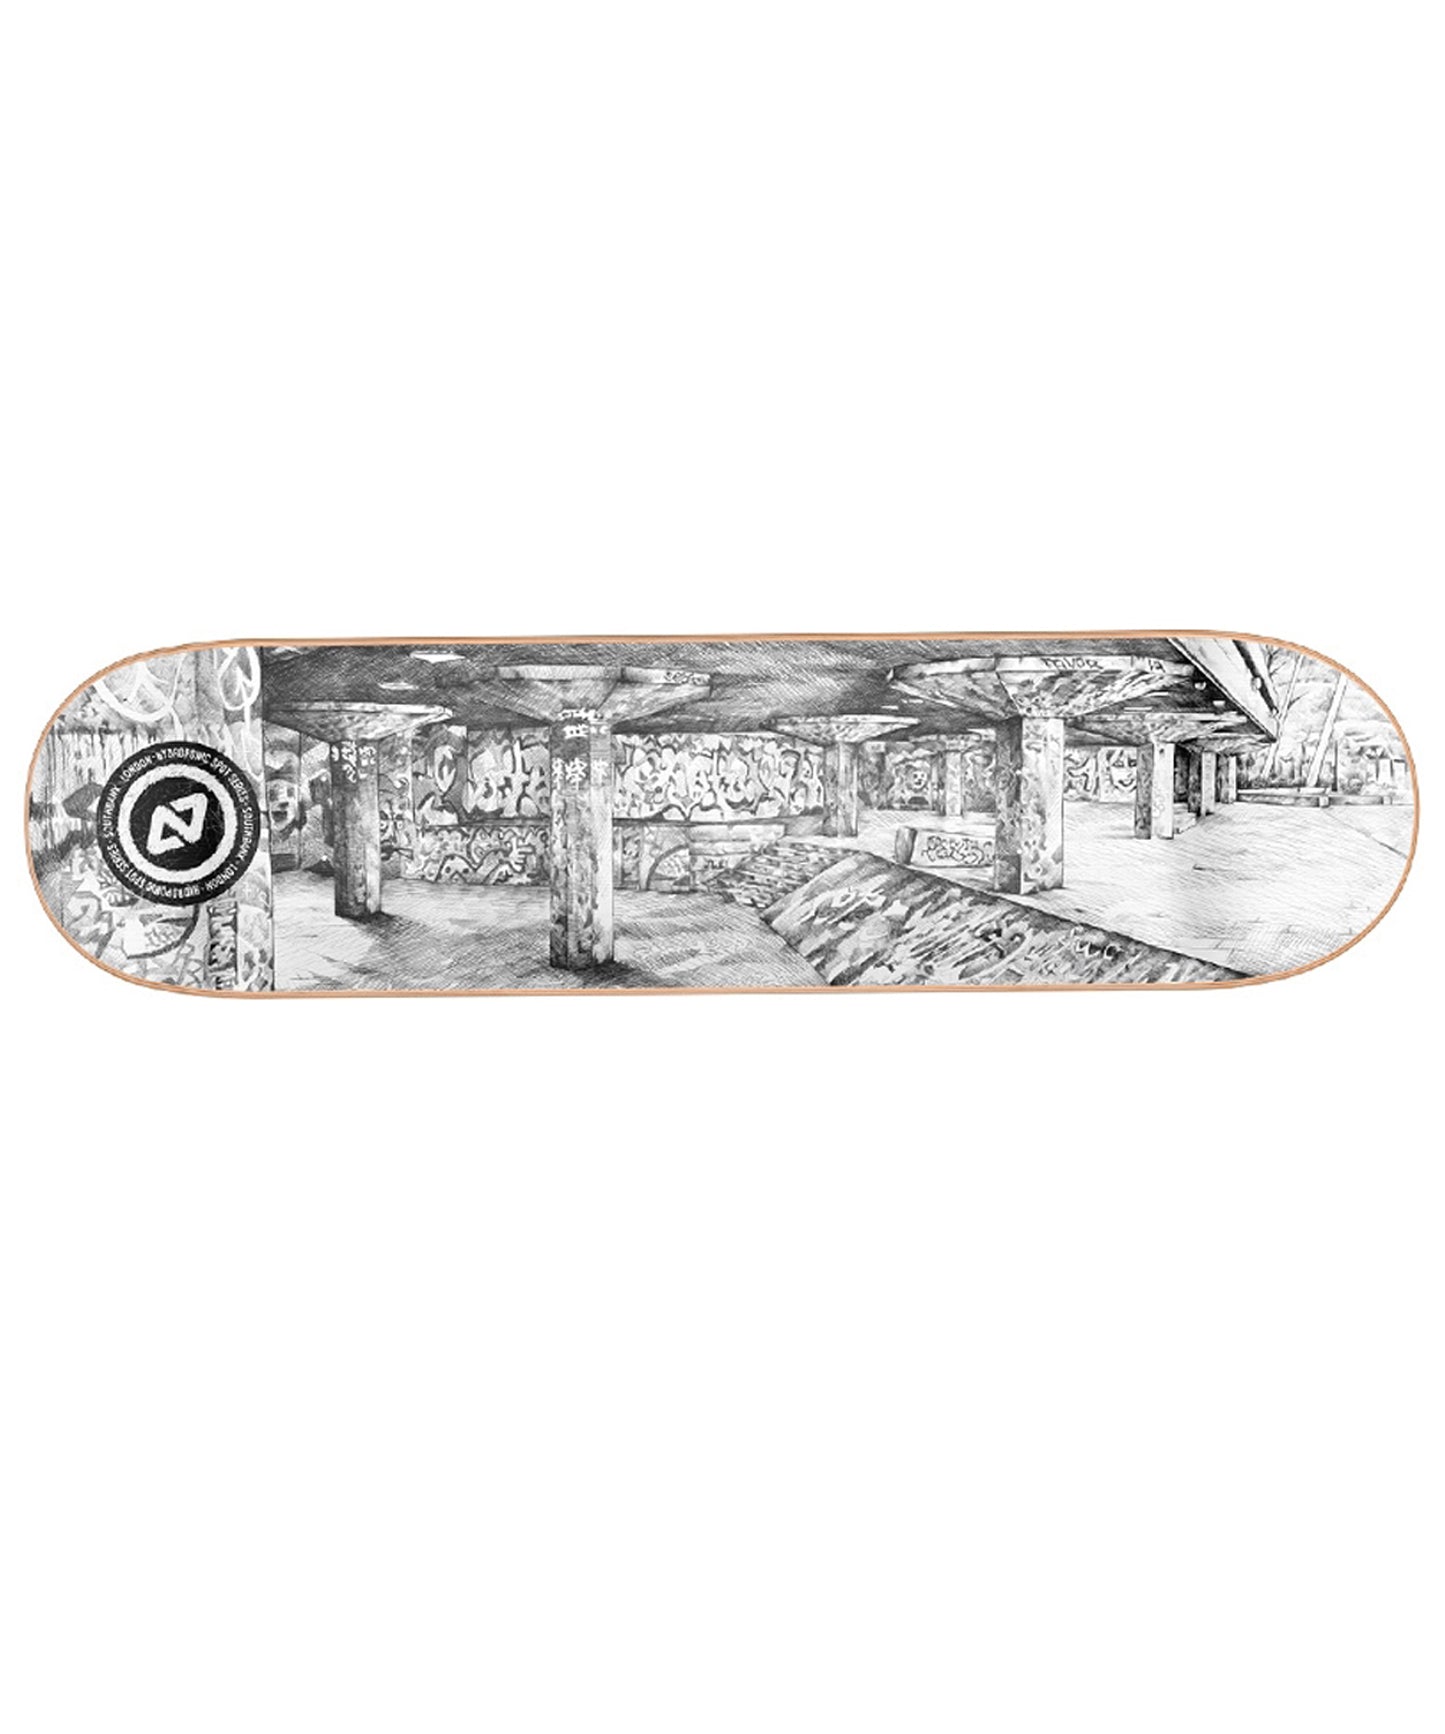 hydroponic-southbank-tabla de skate-8"-cóncavo-alto-7 capas de arce canadiense- con epoxy